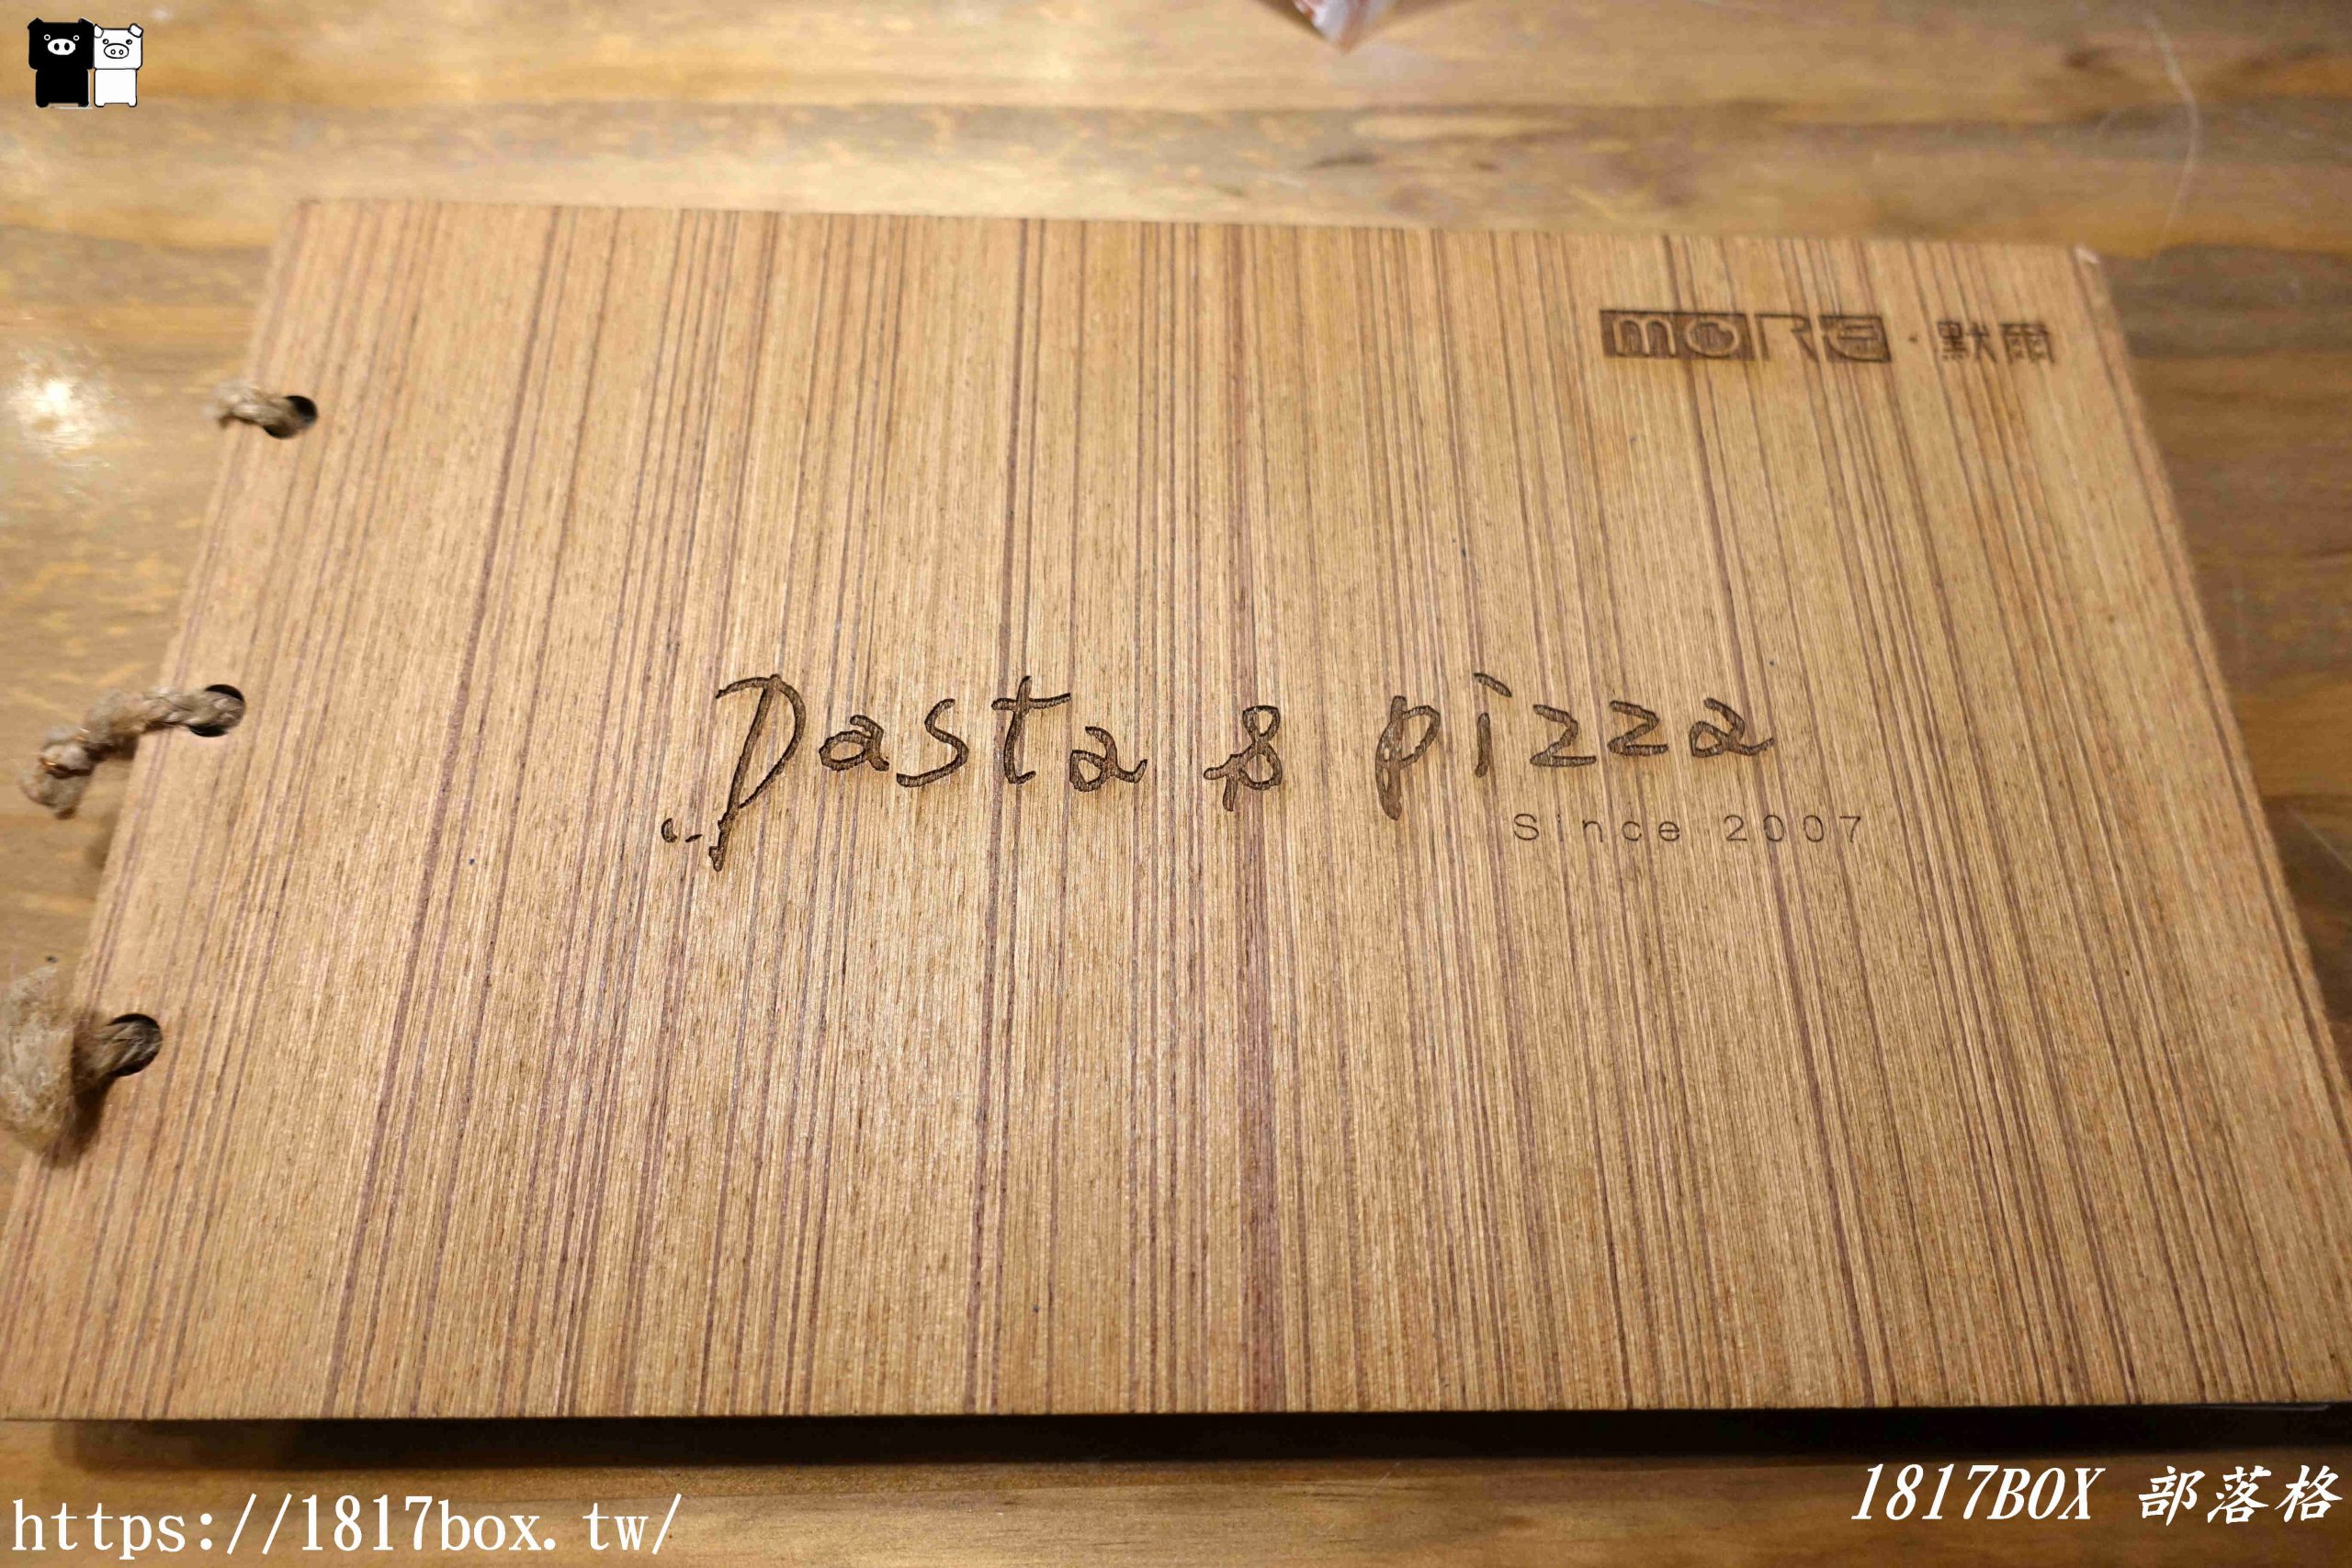 【台中。西屯】默爾 pasta pizza義大利餐廳。台中J Mall店​。天然原味零添加的義大利美食